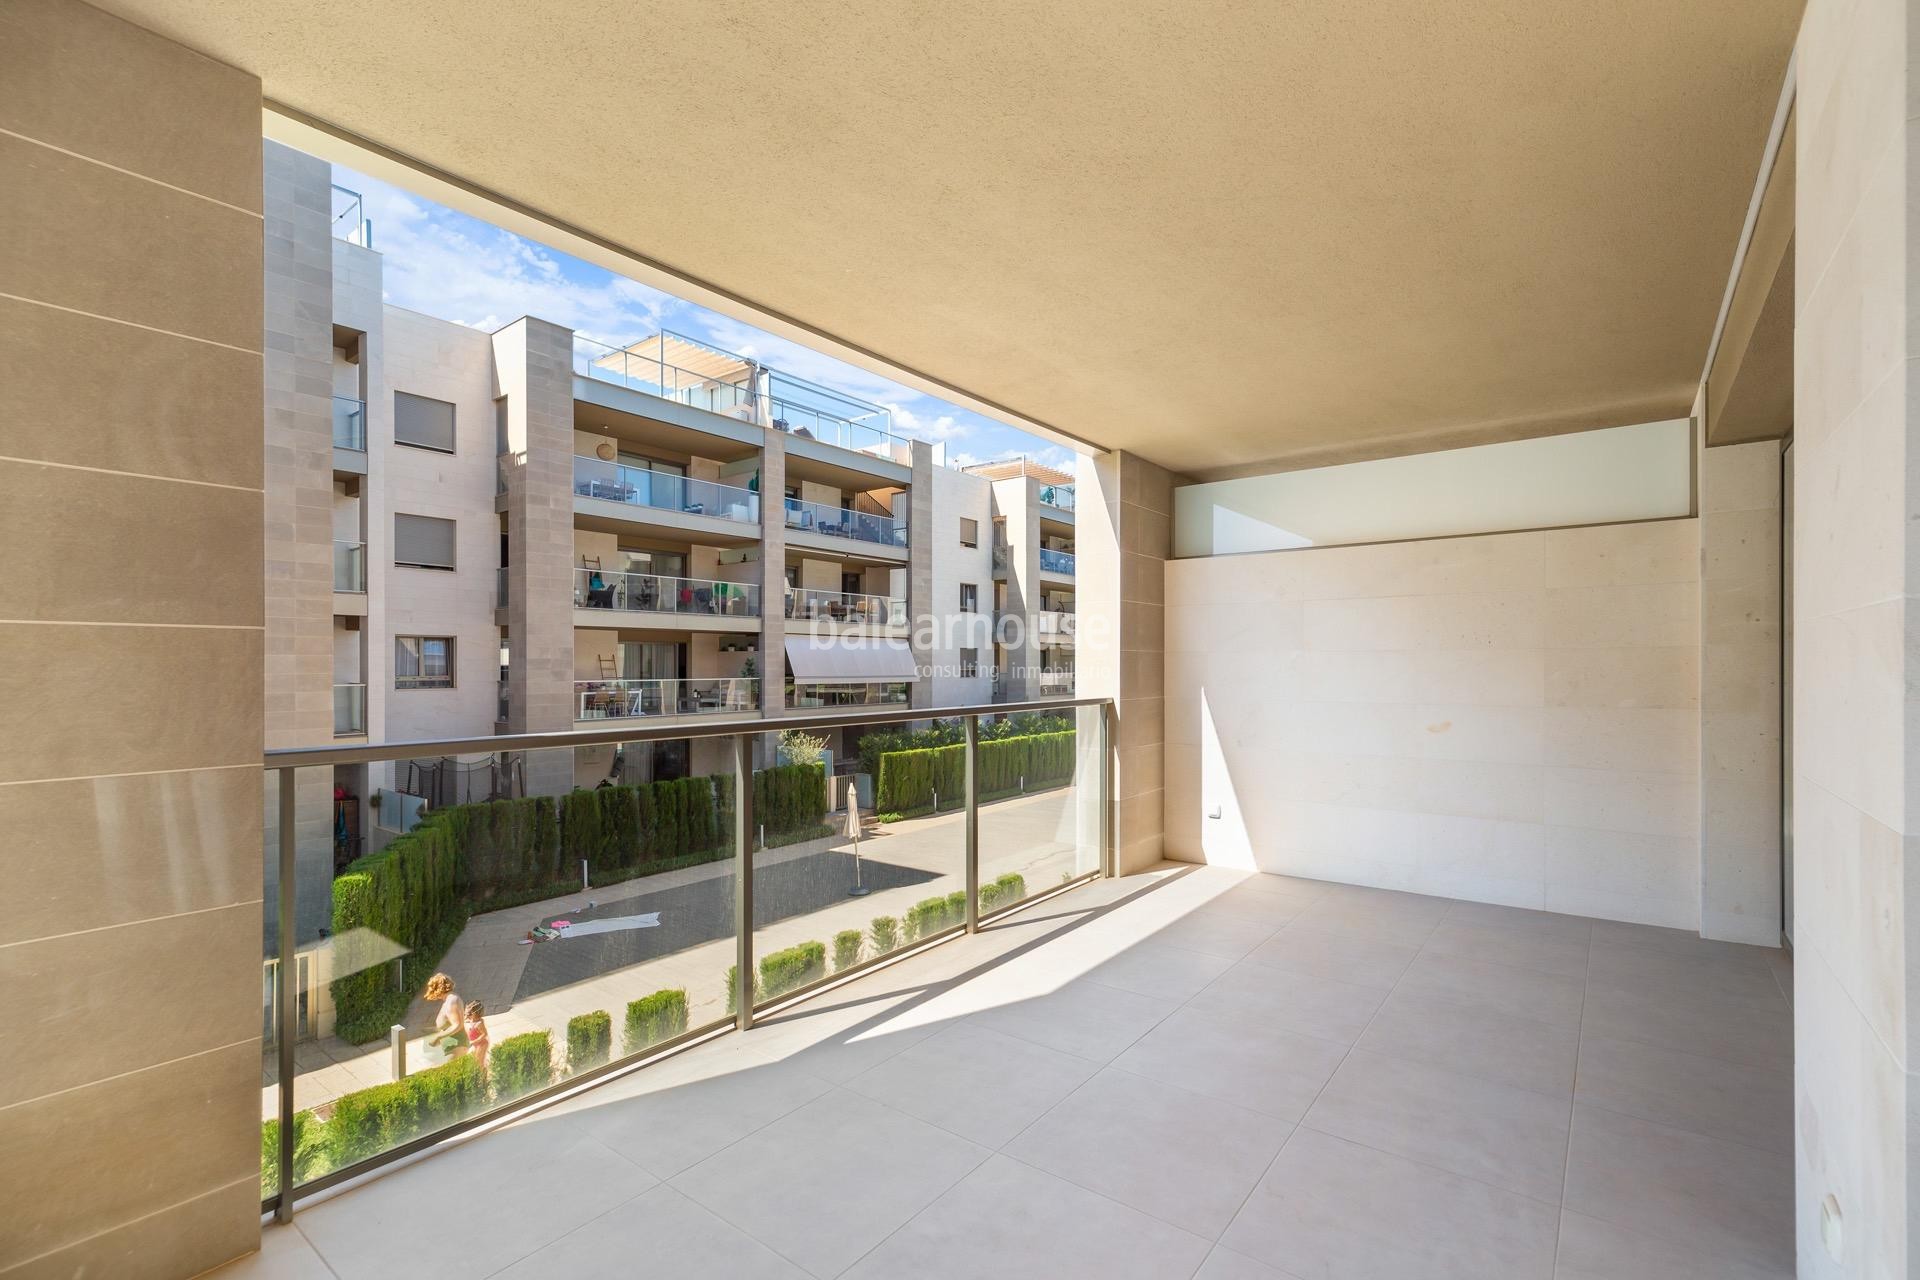 Moderno piso dentro de un cuidado complejo con piscinas y zonas verdes en Palma